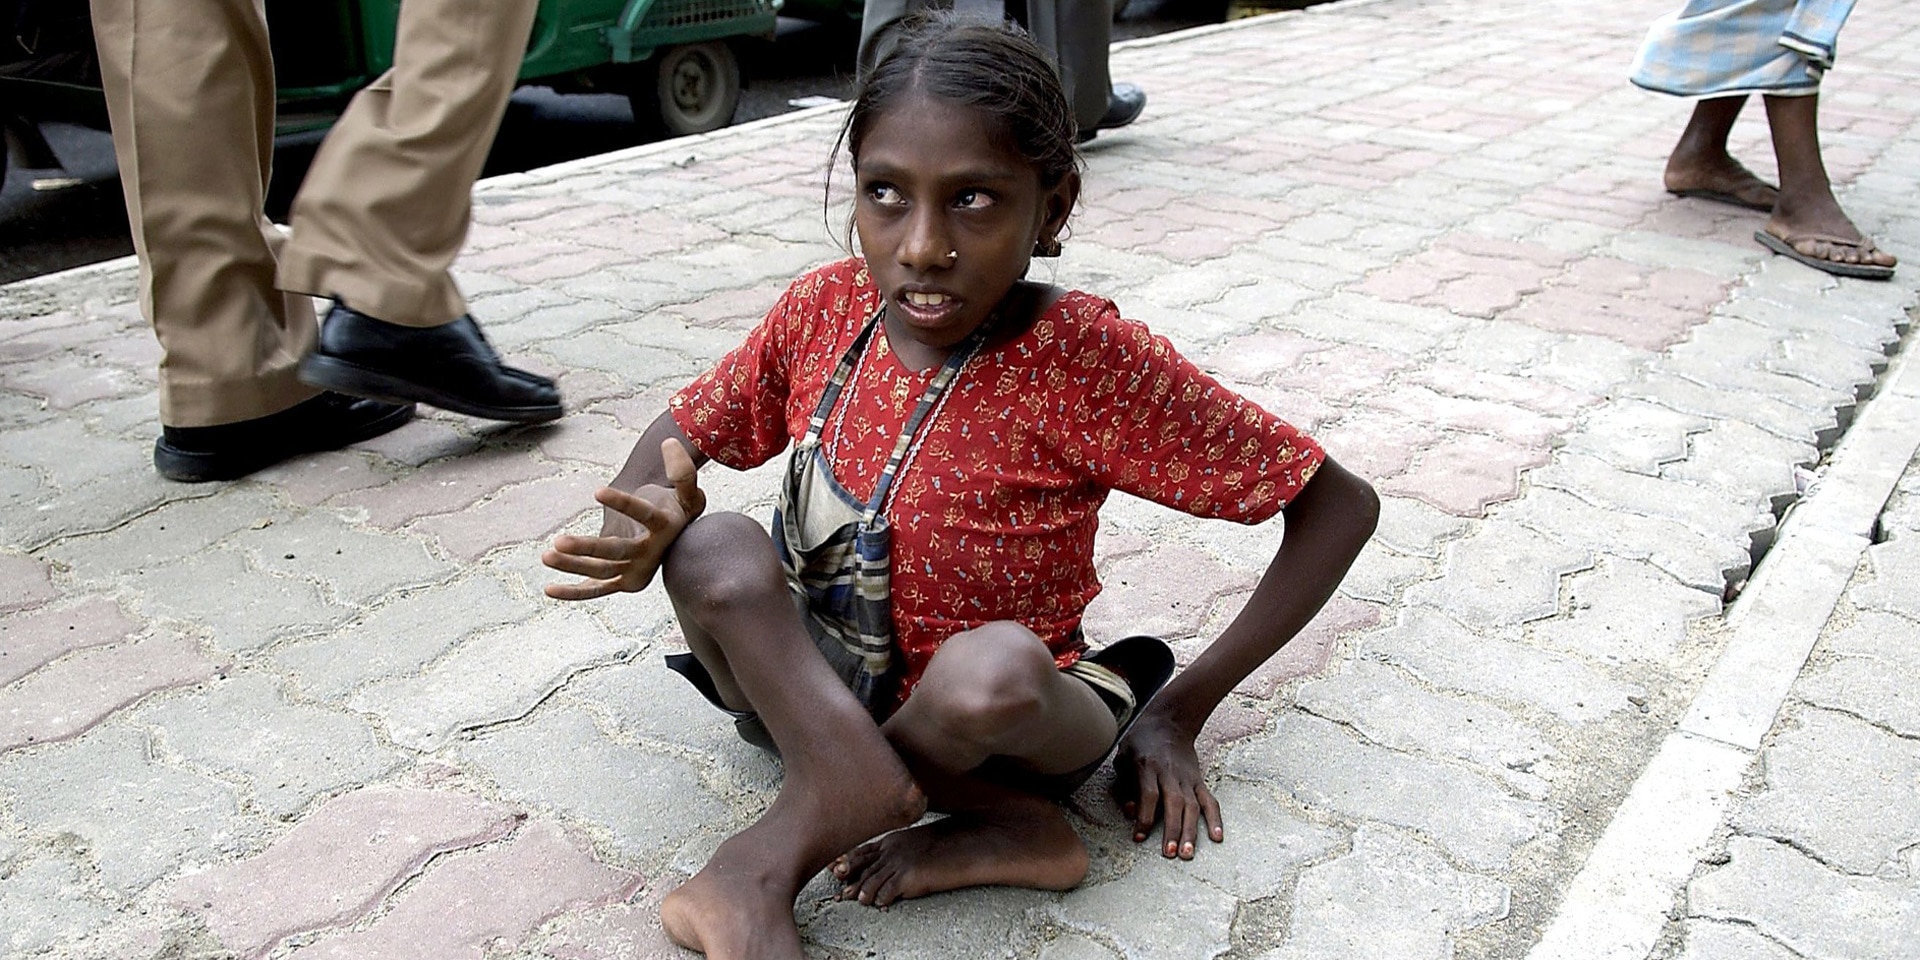 Una bambina bangladese con una disabilità fisica seduta a terra sul marciapiede.